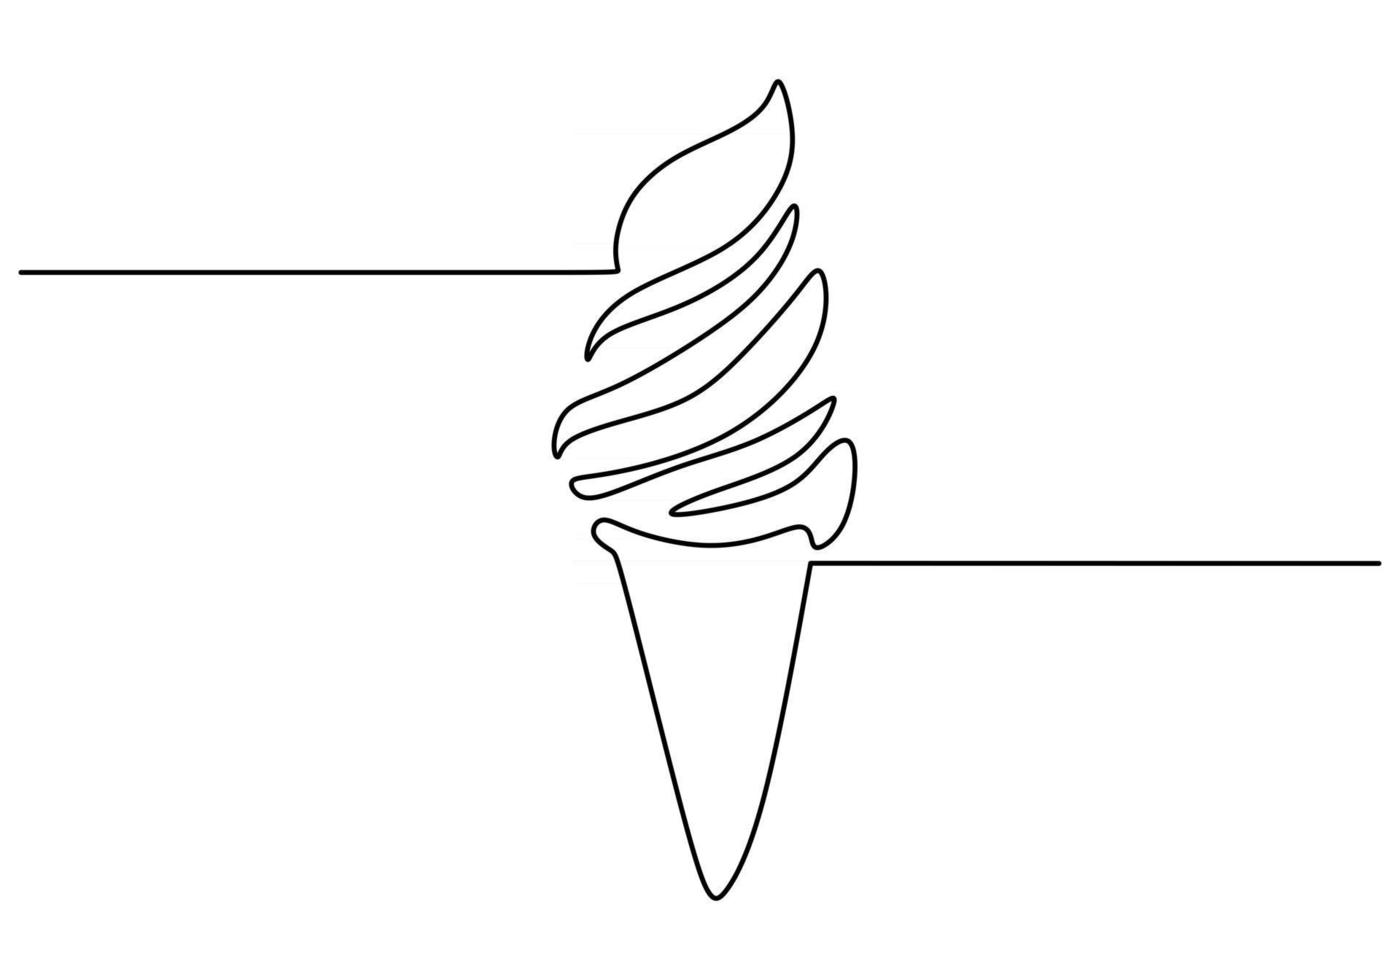 singola linea continua di un gelato. un gelato fast food in uno stile di linea isolato su priorità bassa bianca. vettore